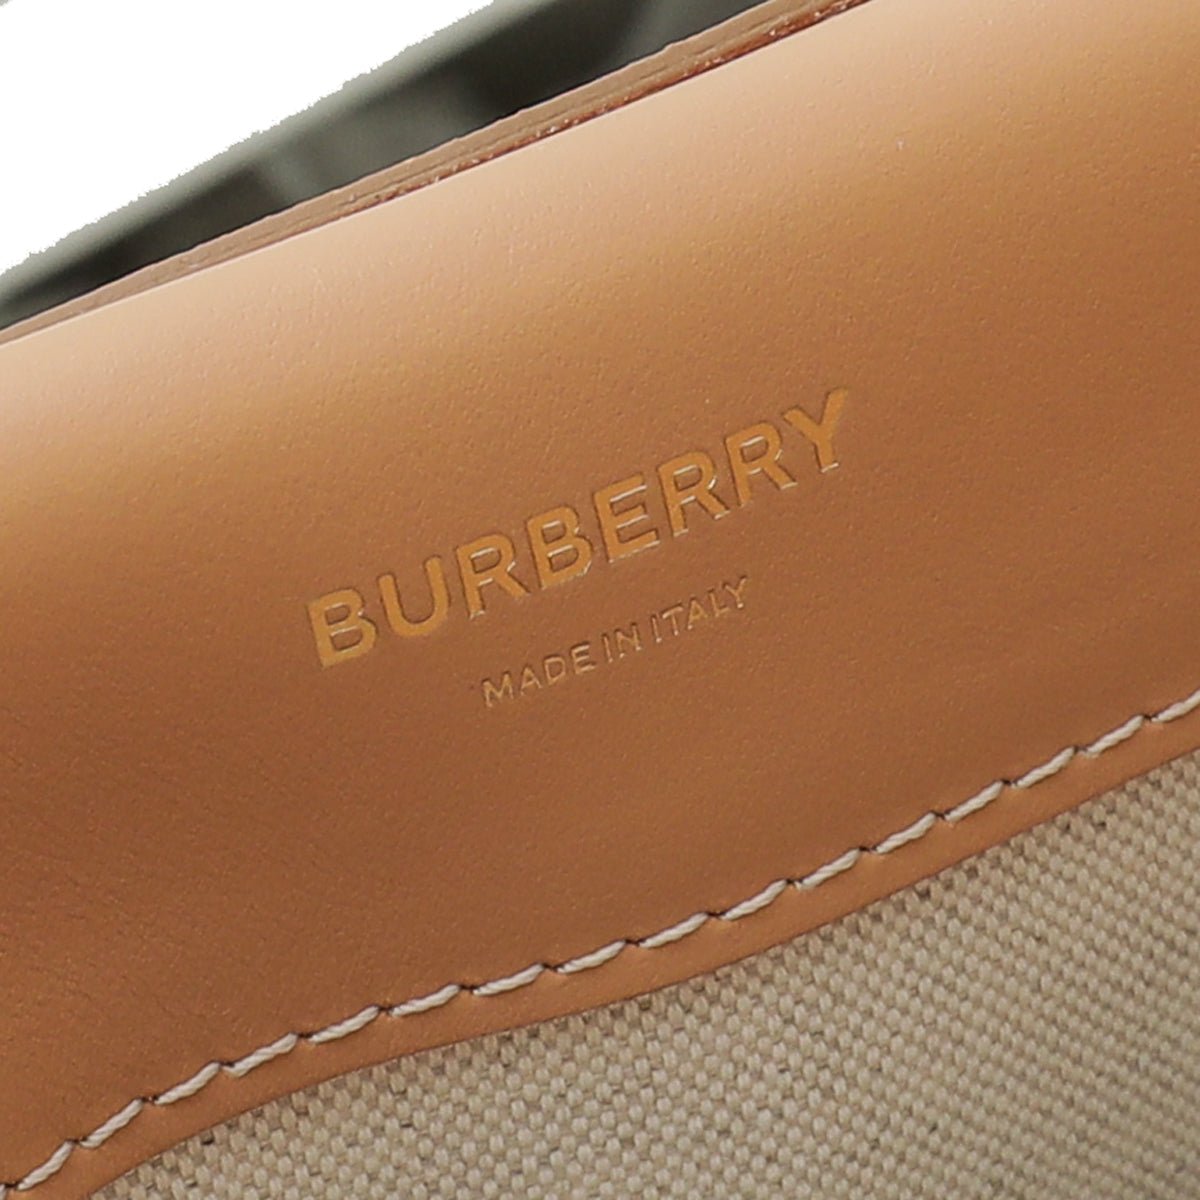 thecloset.uae - Burberry Warm Sand Pocket Medium Bag | The Closet